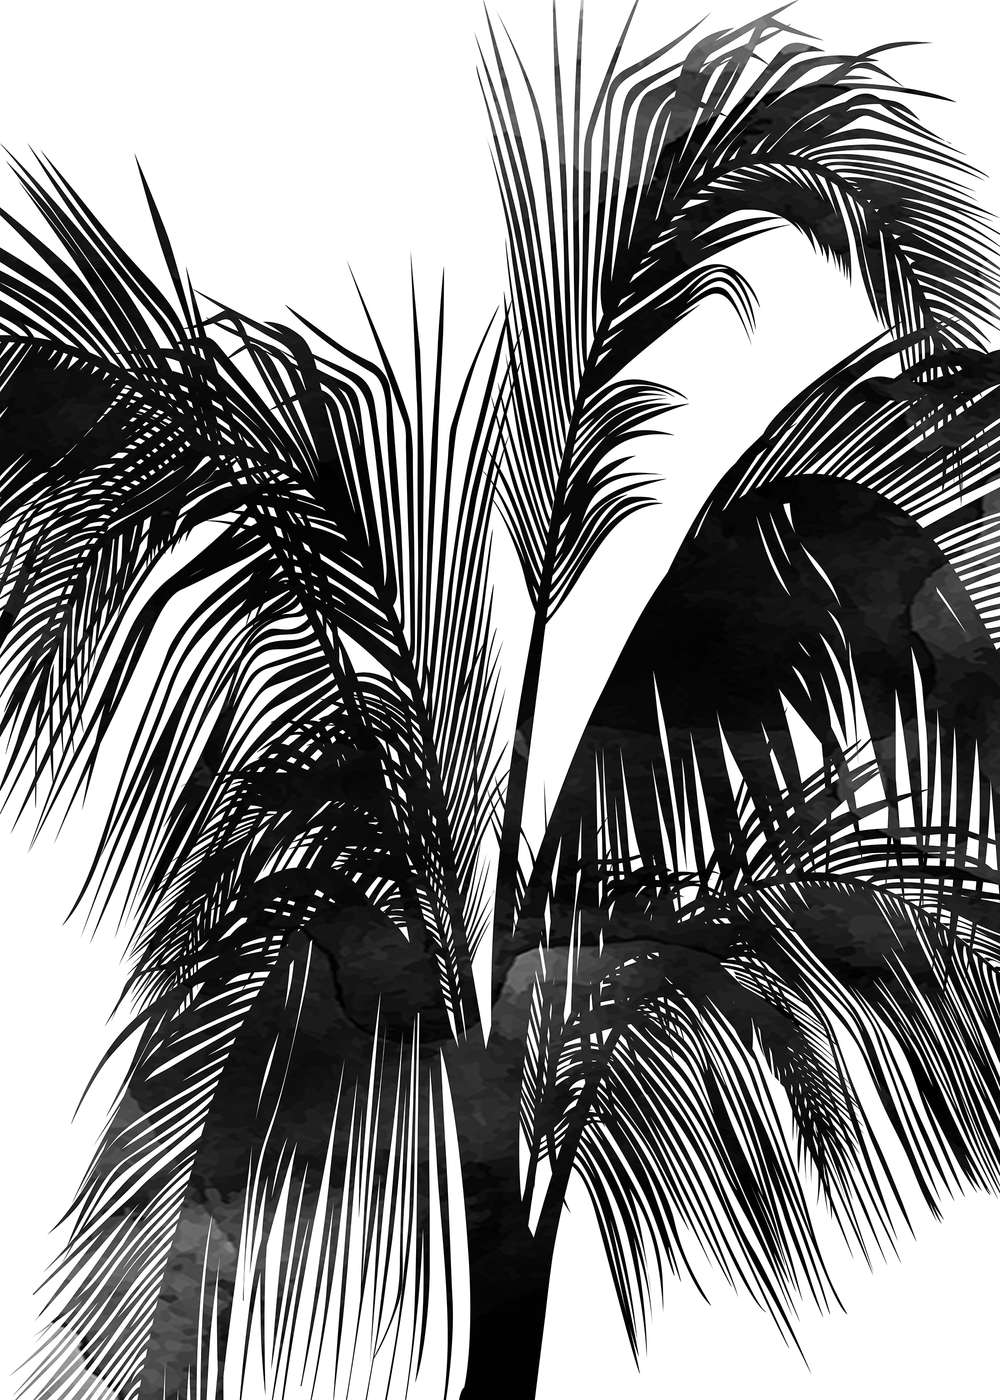             Papel pintado de Palmeras en blanco y negro de Sunset Boulevard
        